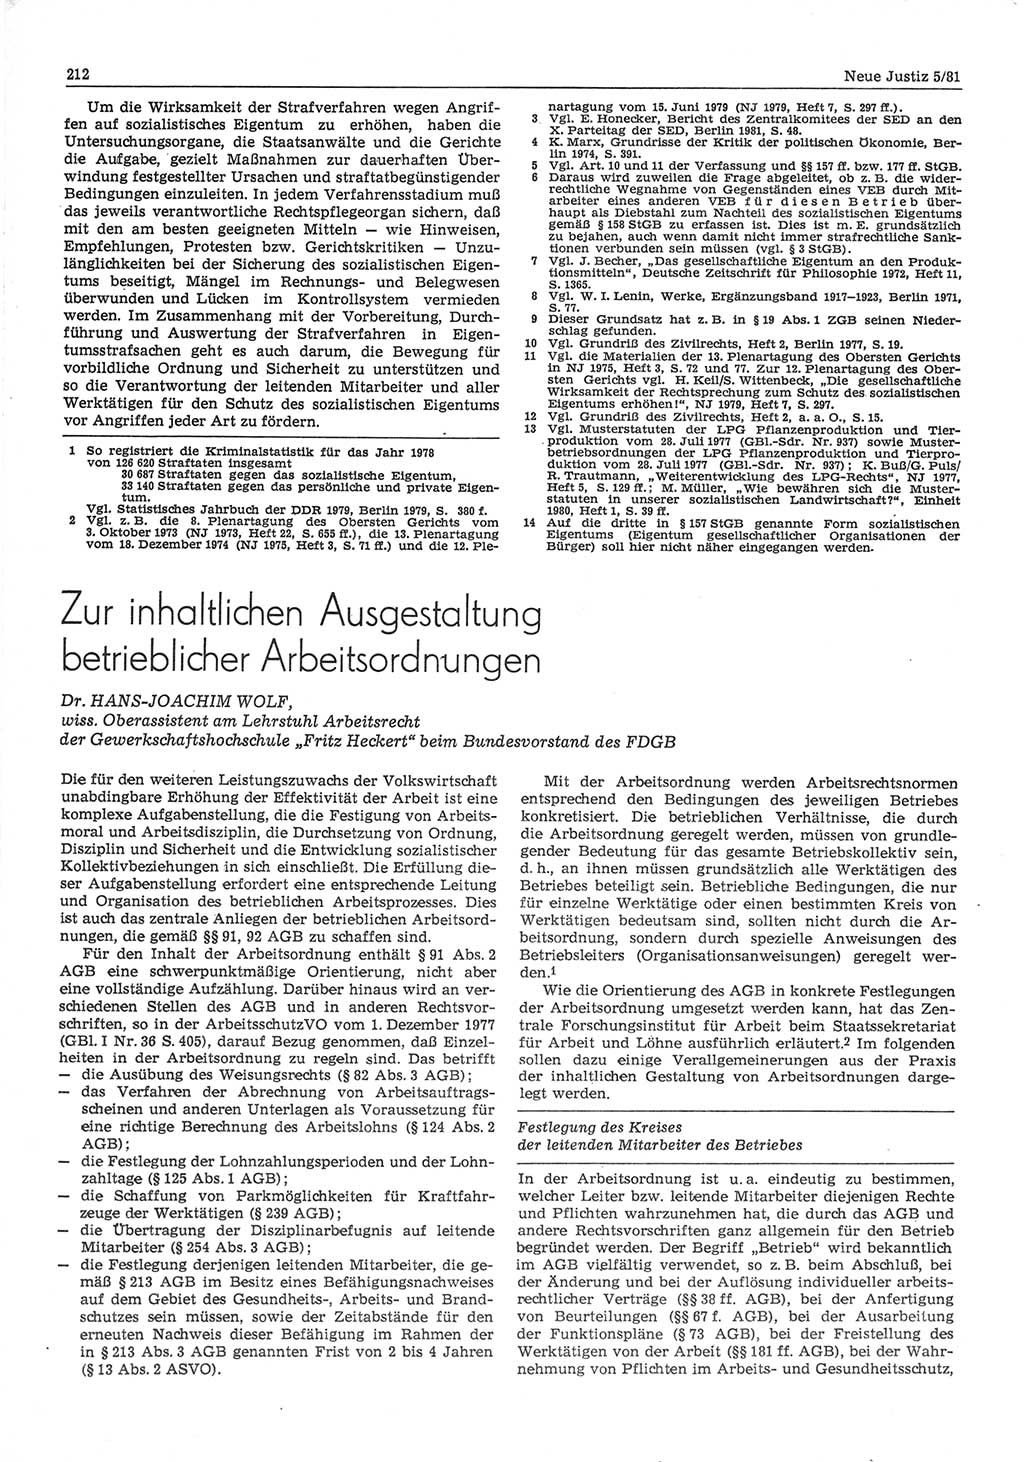 Neue Justiz (NJ), Zeitschrift für sozialistisches Recht und Gesetzlichkeit [Deutsche Demokratische Republik (DDR)], 35. Jahrgang 1981, Seite 212 (NJ DDR 1981, S. 212)